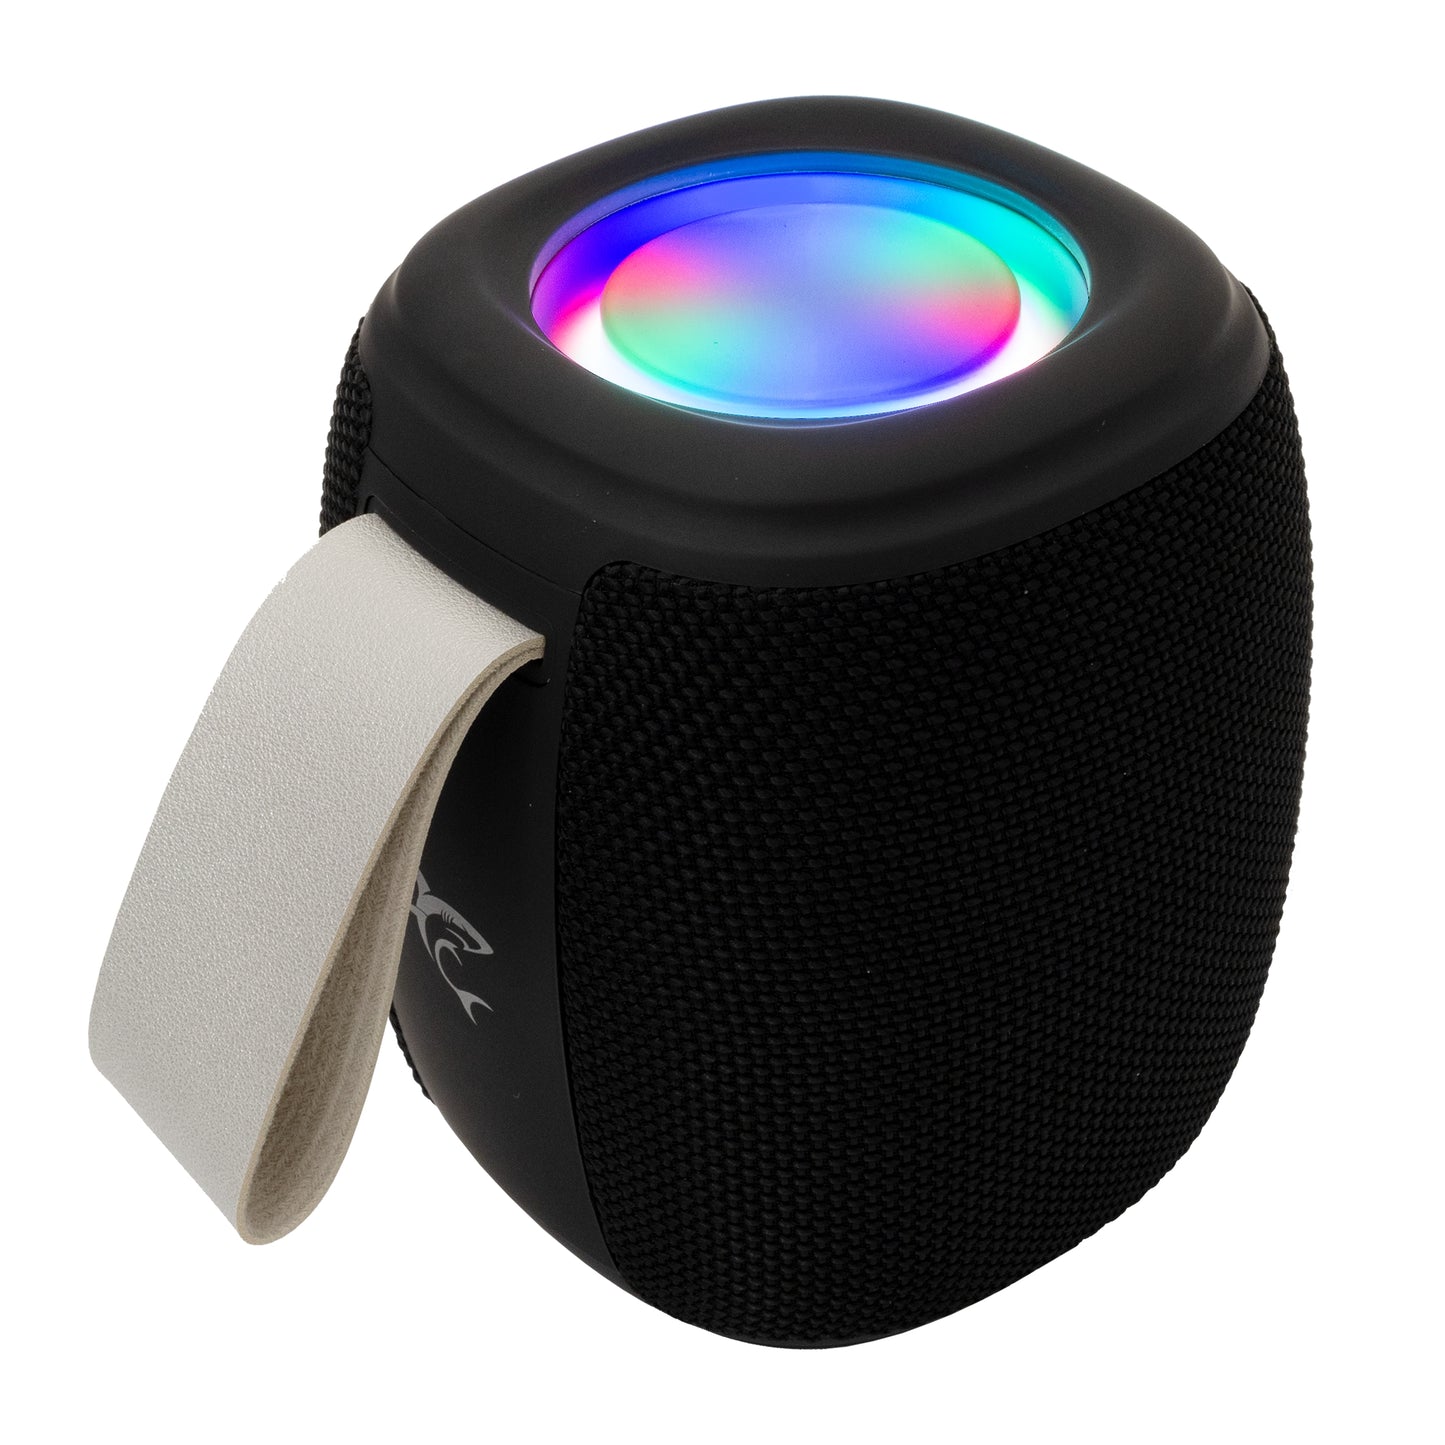 Bluetooth speaker with light, White Shark GBT-888 Dhak